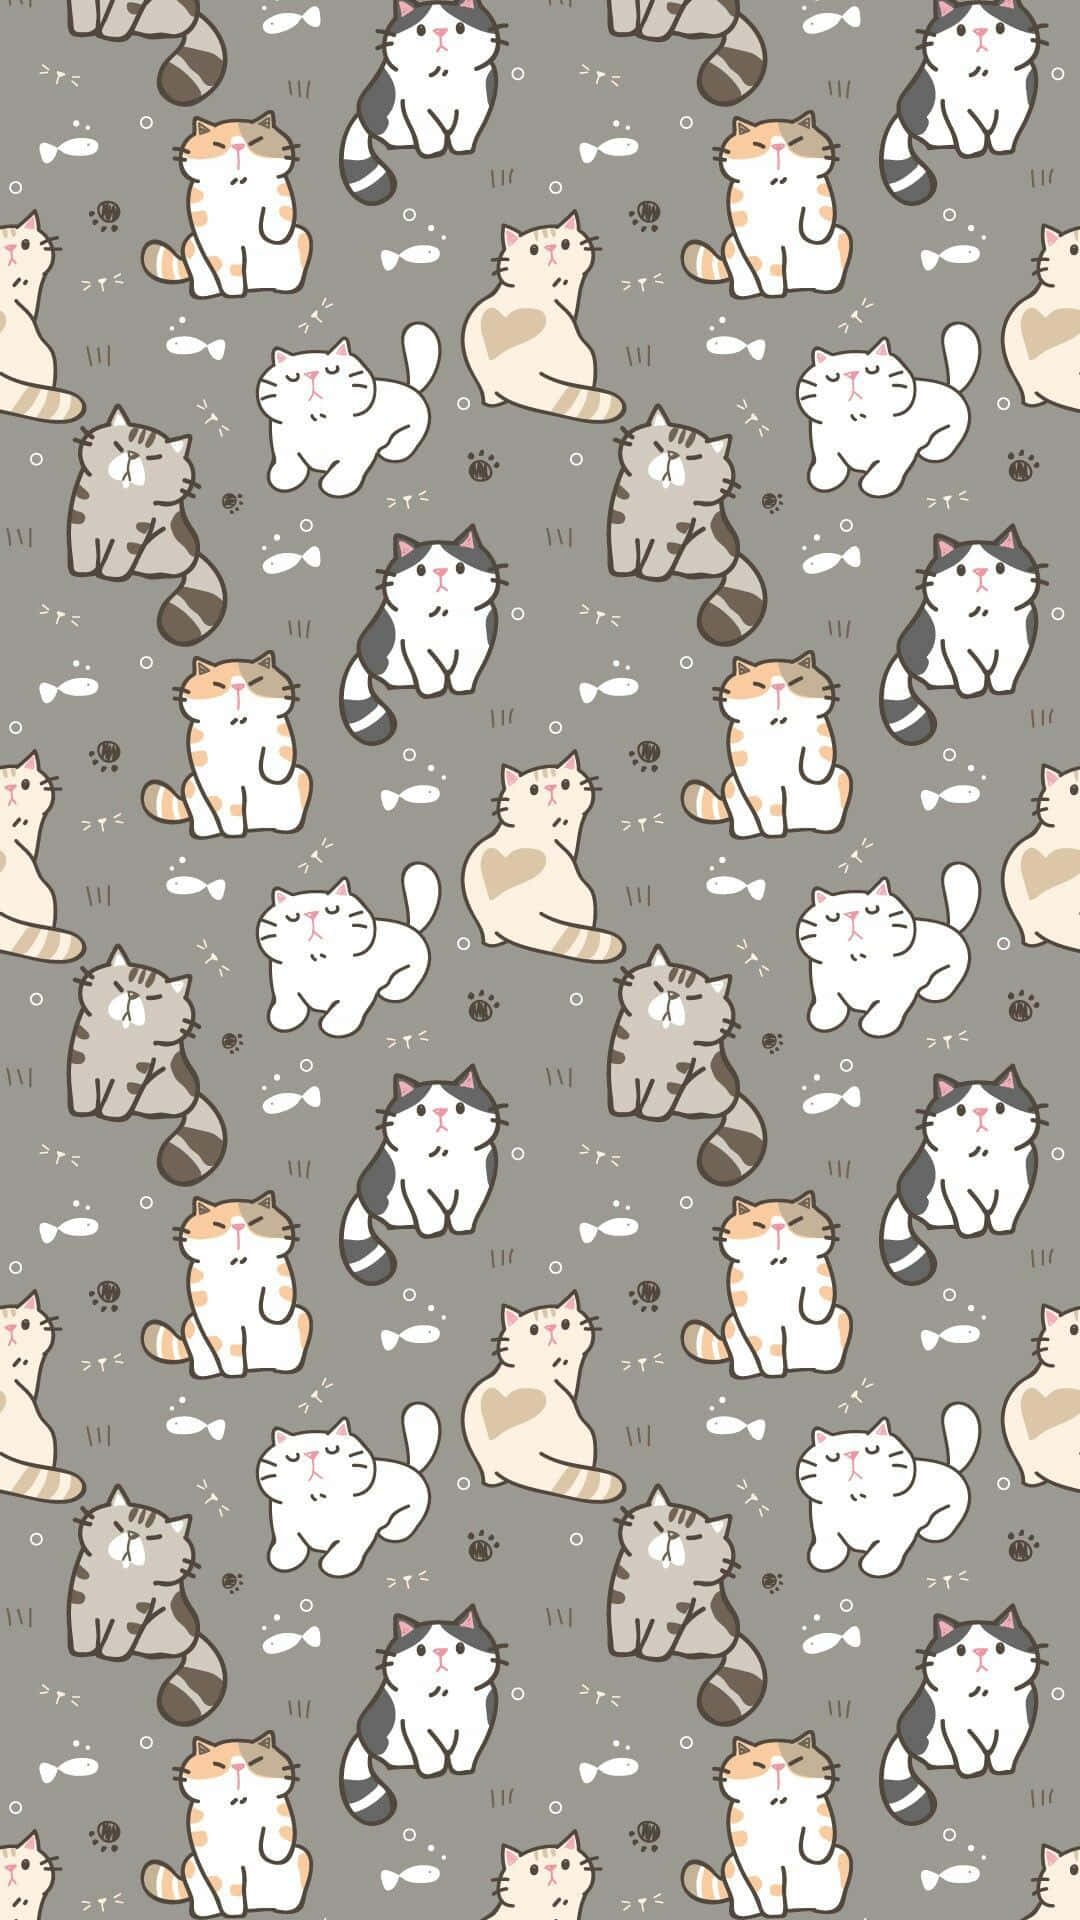 Et baggrundsbillede dækket med søde katte mønstre for at gøre din dag lysere! Wallpaper